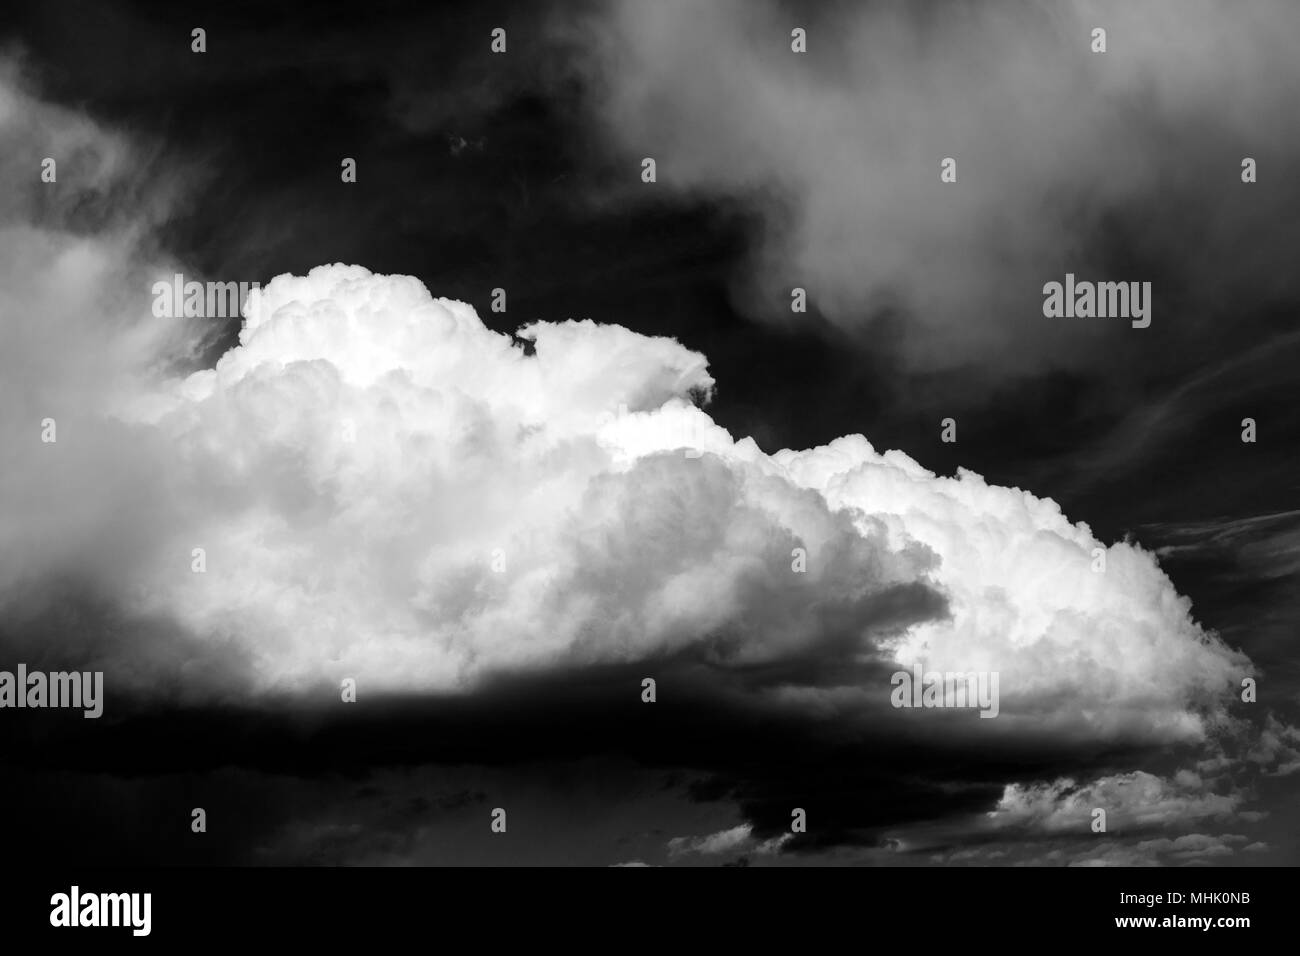 Natur himmel wolken Schwarzweiß-Stockfotos und -bilder - Alamy